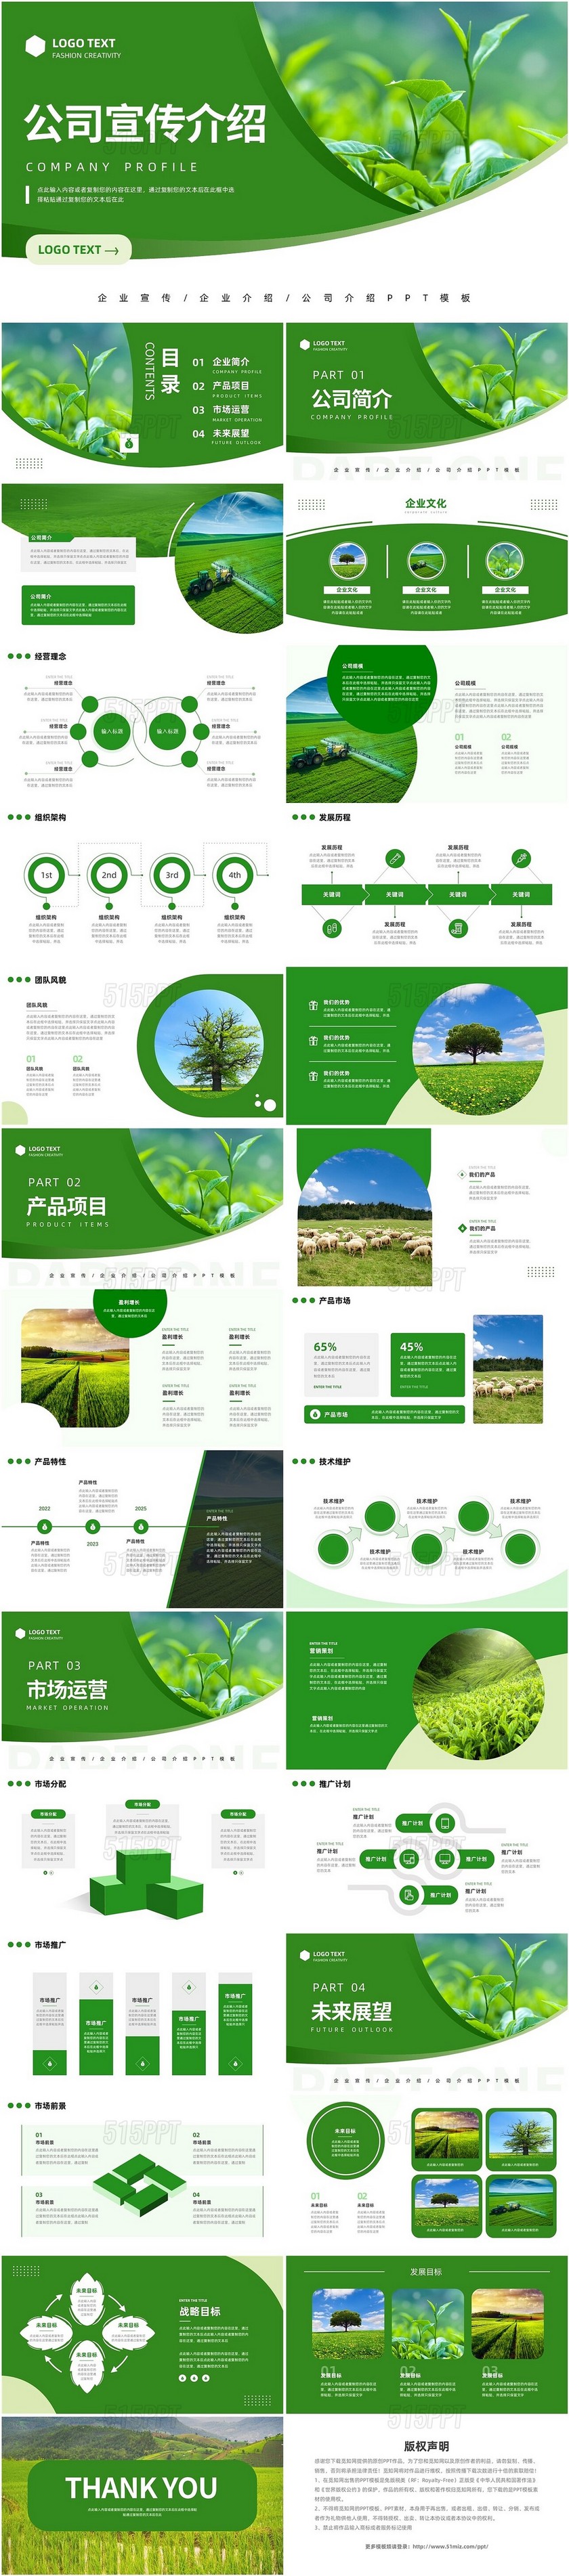 绿色简约公司介绍绿色农业公司宣传PPT模板宣传PPT动态PP